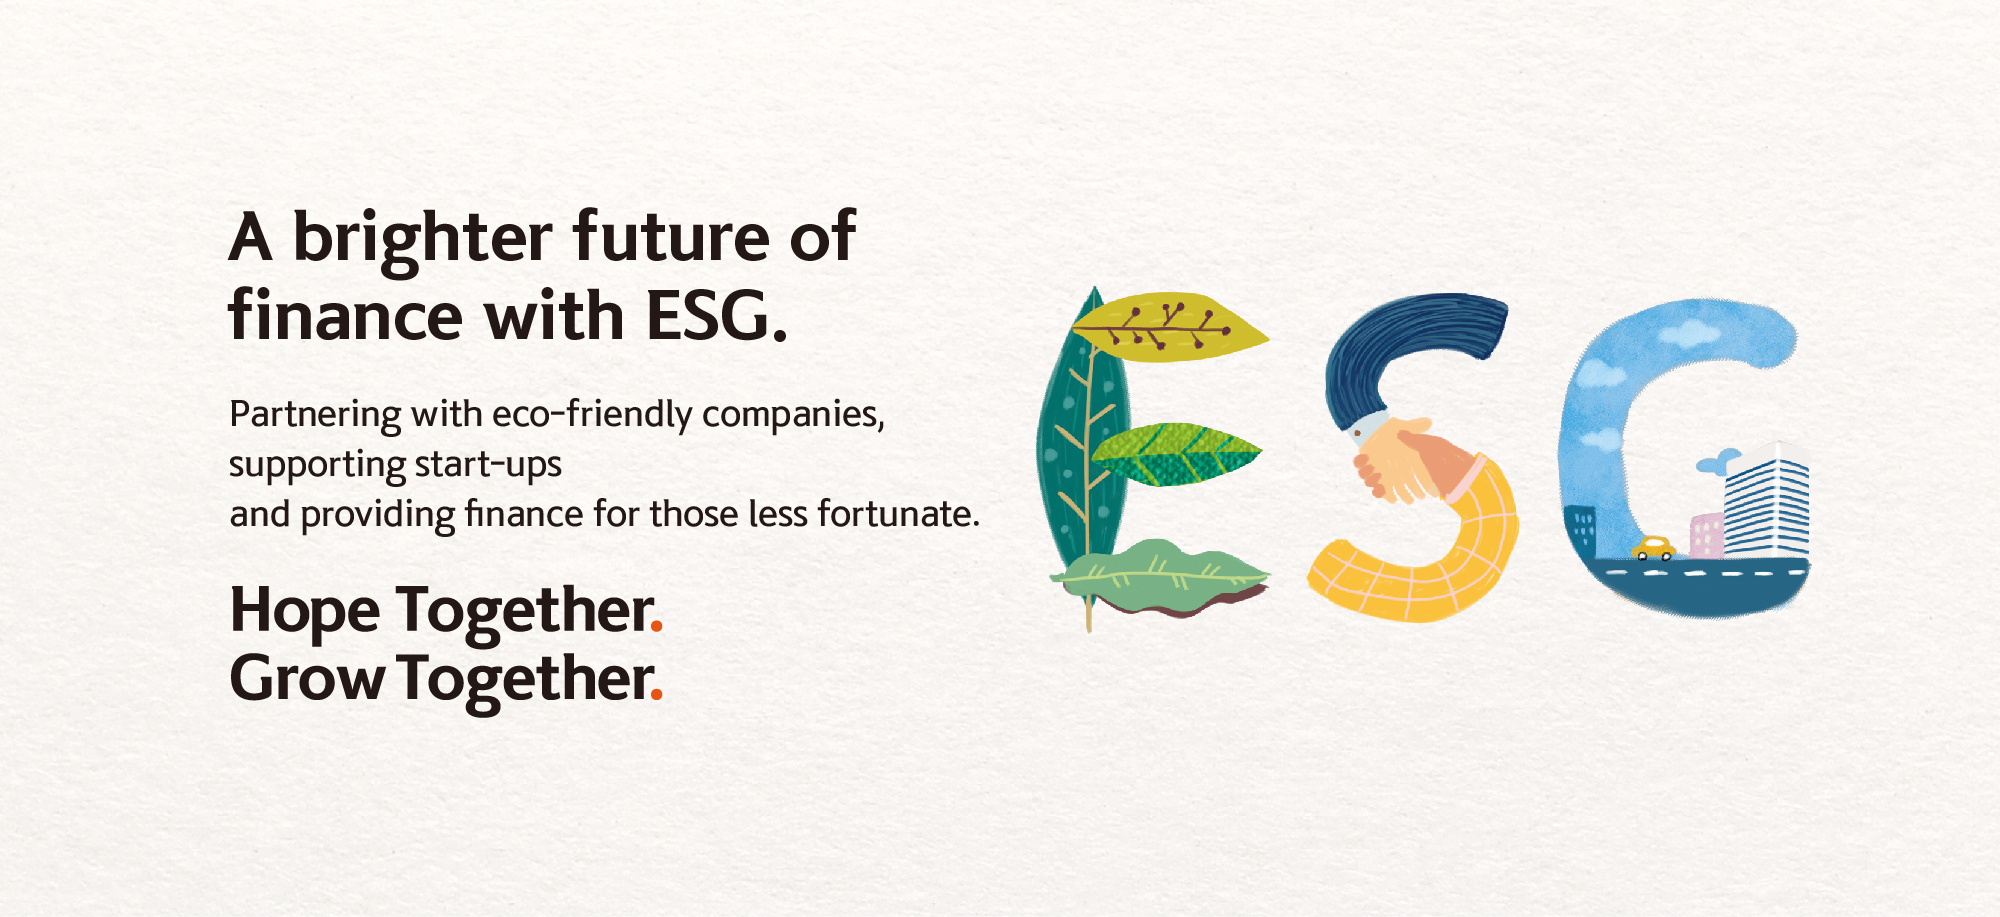 메인 슬라이드 이미지_이익을 넘어 환경까지 생각하는 곳과 손잡다 친환경 기업에 투자하고 탄소를 줄이는 회사들과 손잡으며 지속 가능한 환경을 만들어 나갑니다. Hope Together. Grow Together.